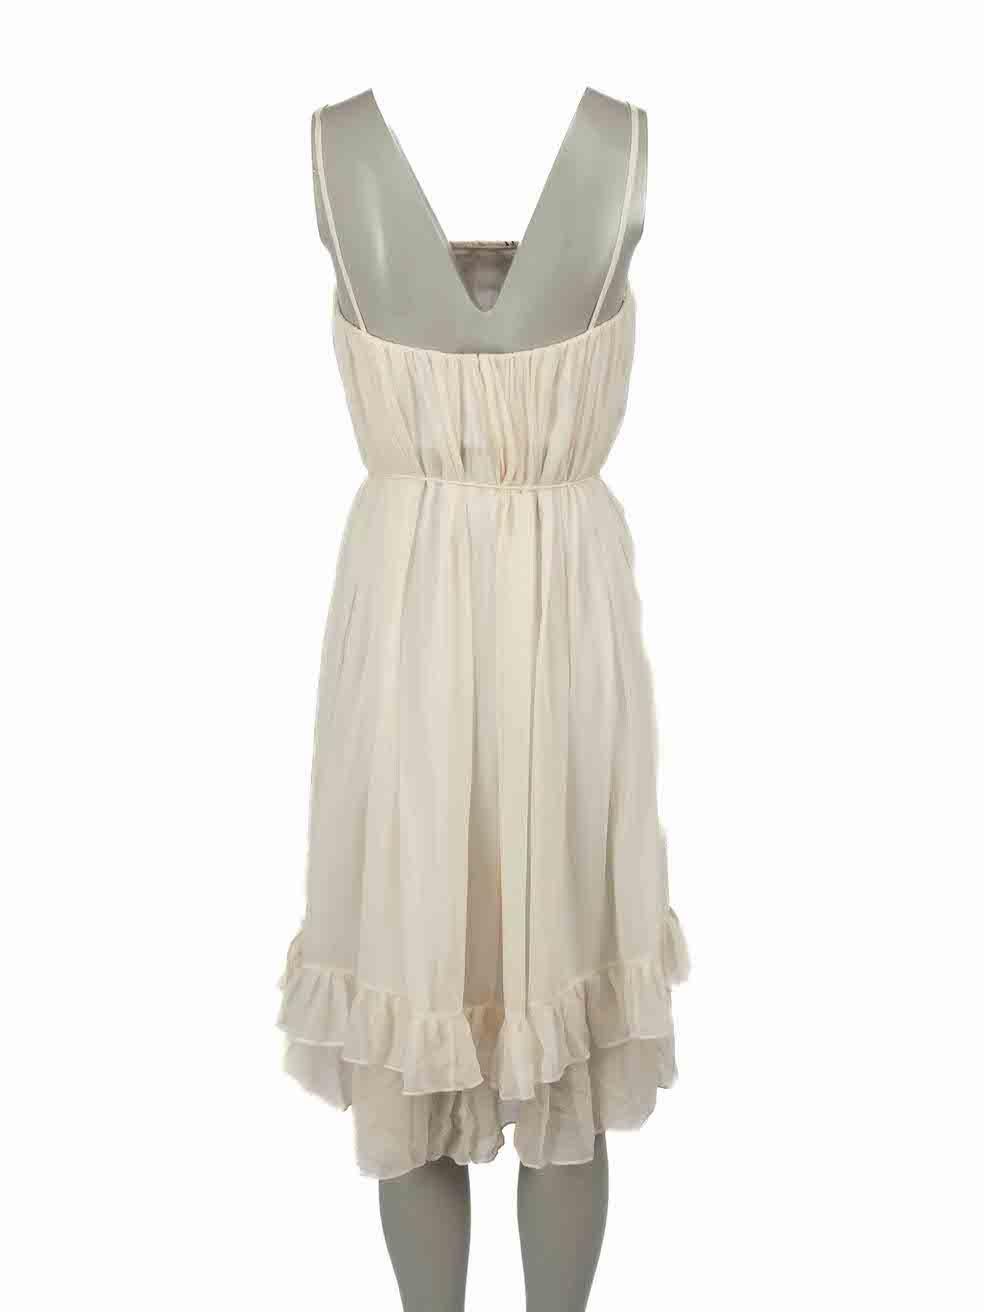 Diane Von Furstenberg Cream Pattern Ruched Dress Size S In Excellent Condition In London, GB